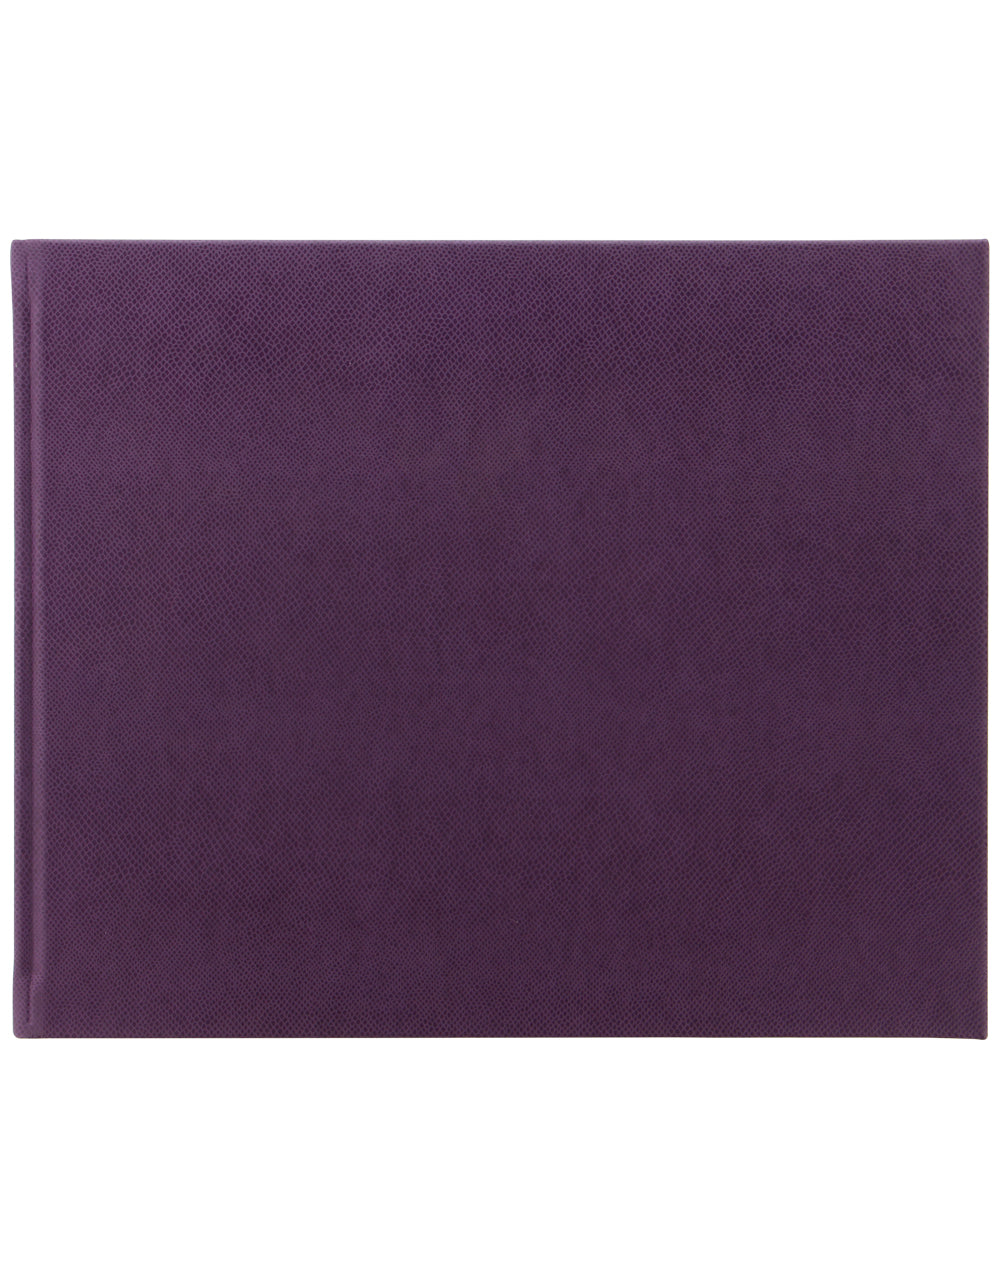 Legacy Quarto Landscape Plain Guest Book Purple